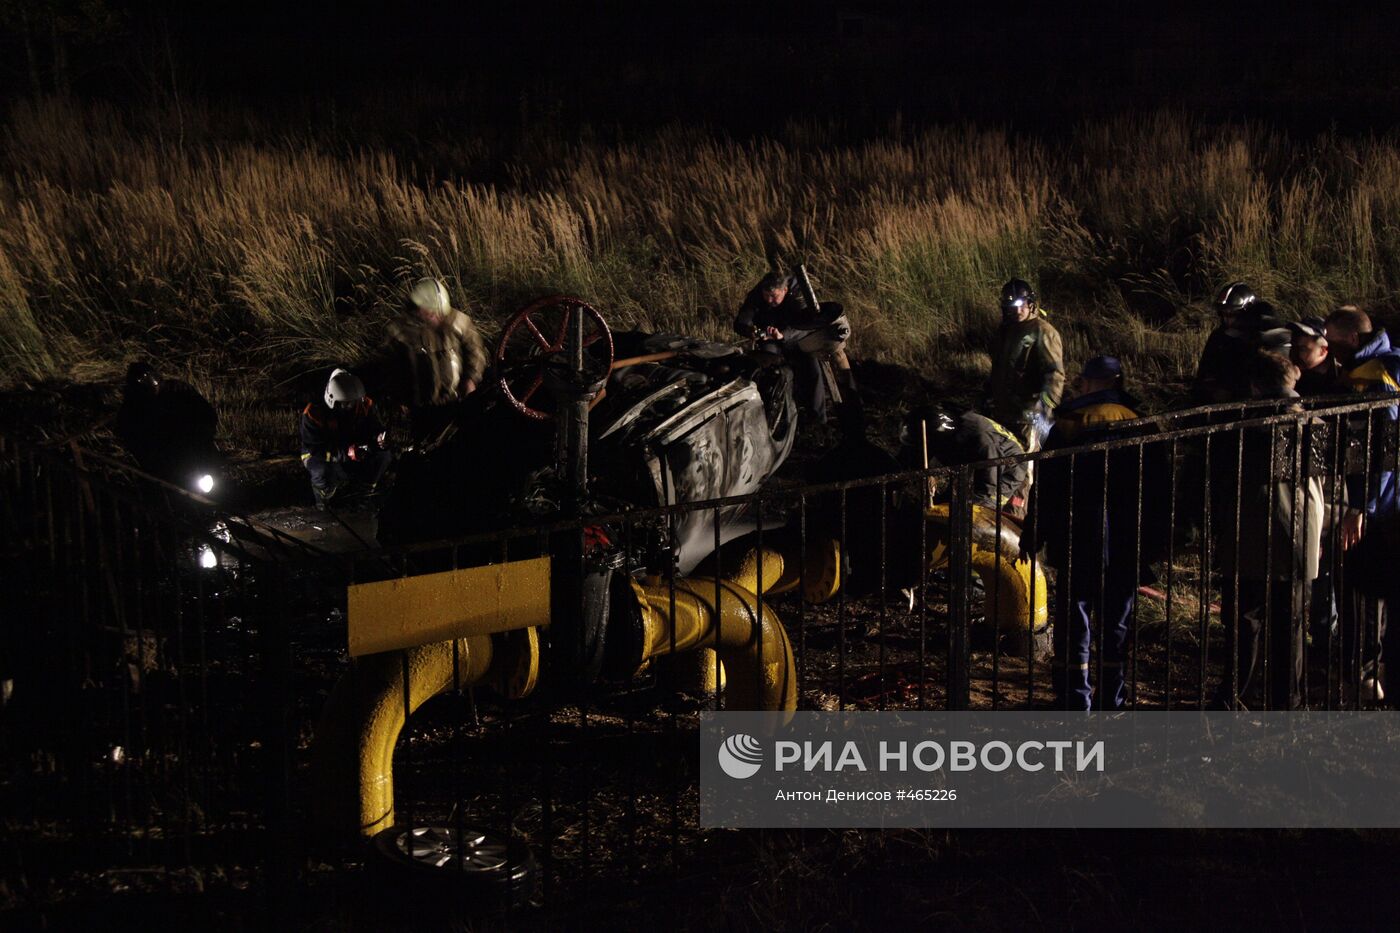 Взрыв магистрального газопровода на Новорижском шоссе